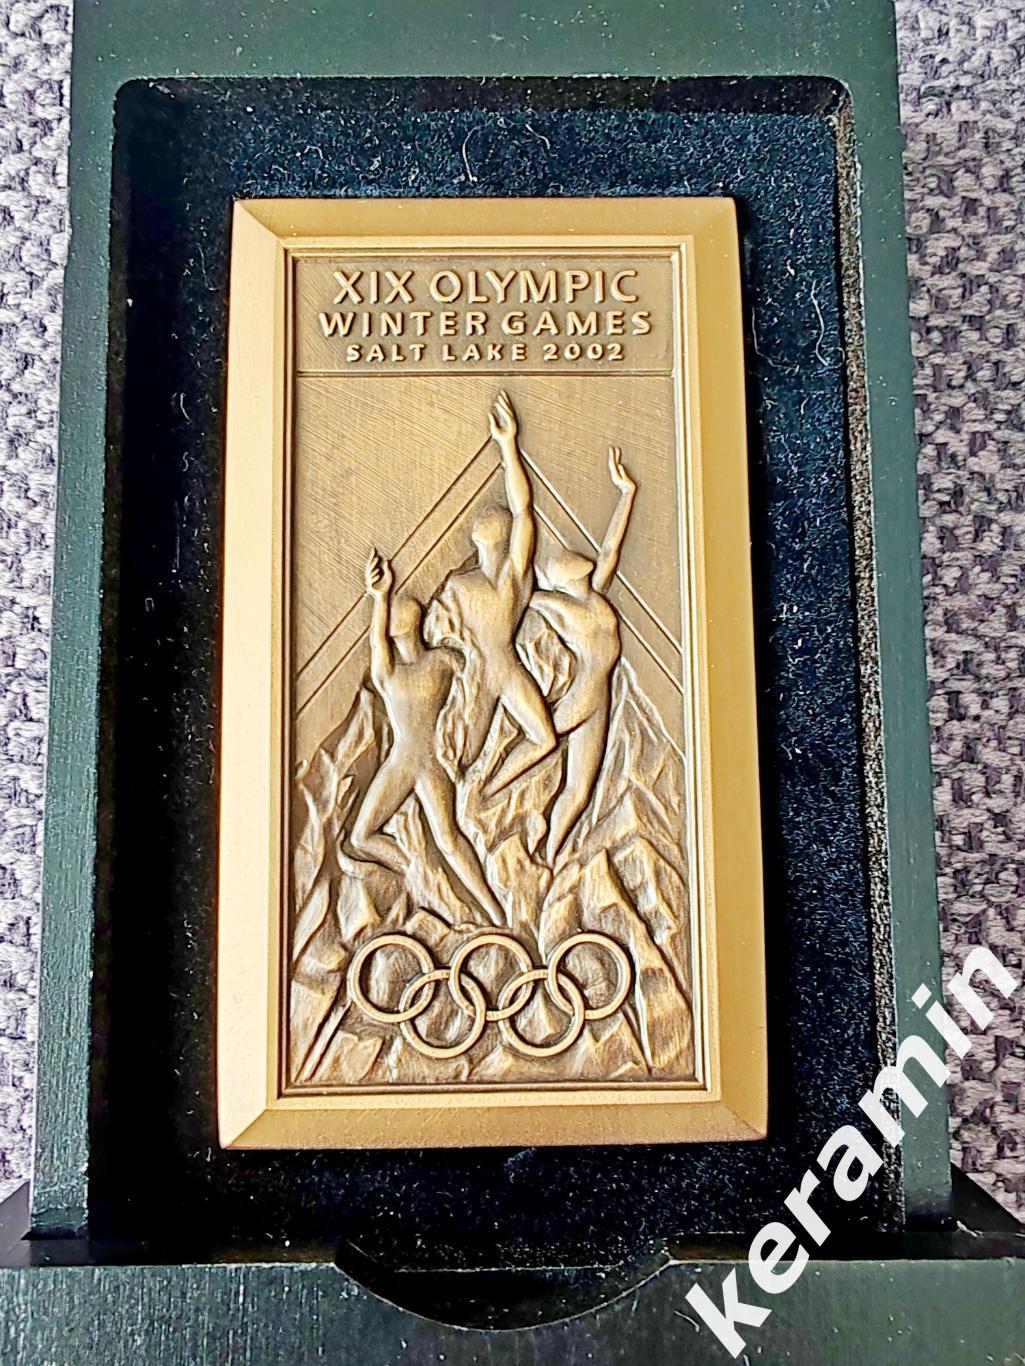 Медальучастника Олимпийских игр Солт-Лейк-Сити 2002 в оригинальной коробке. 1